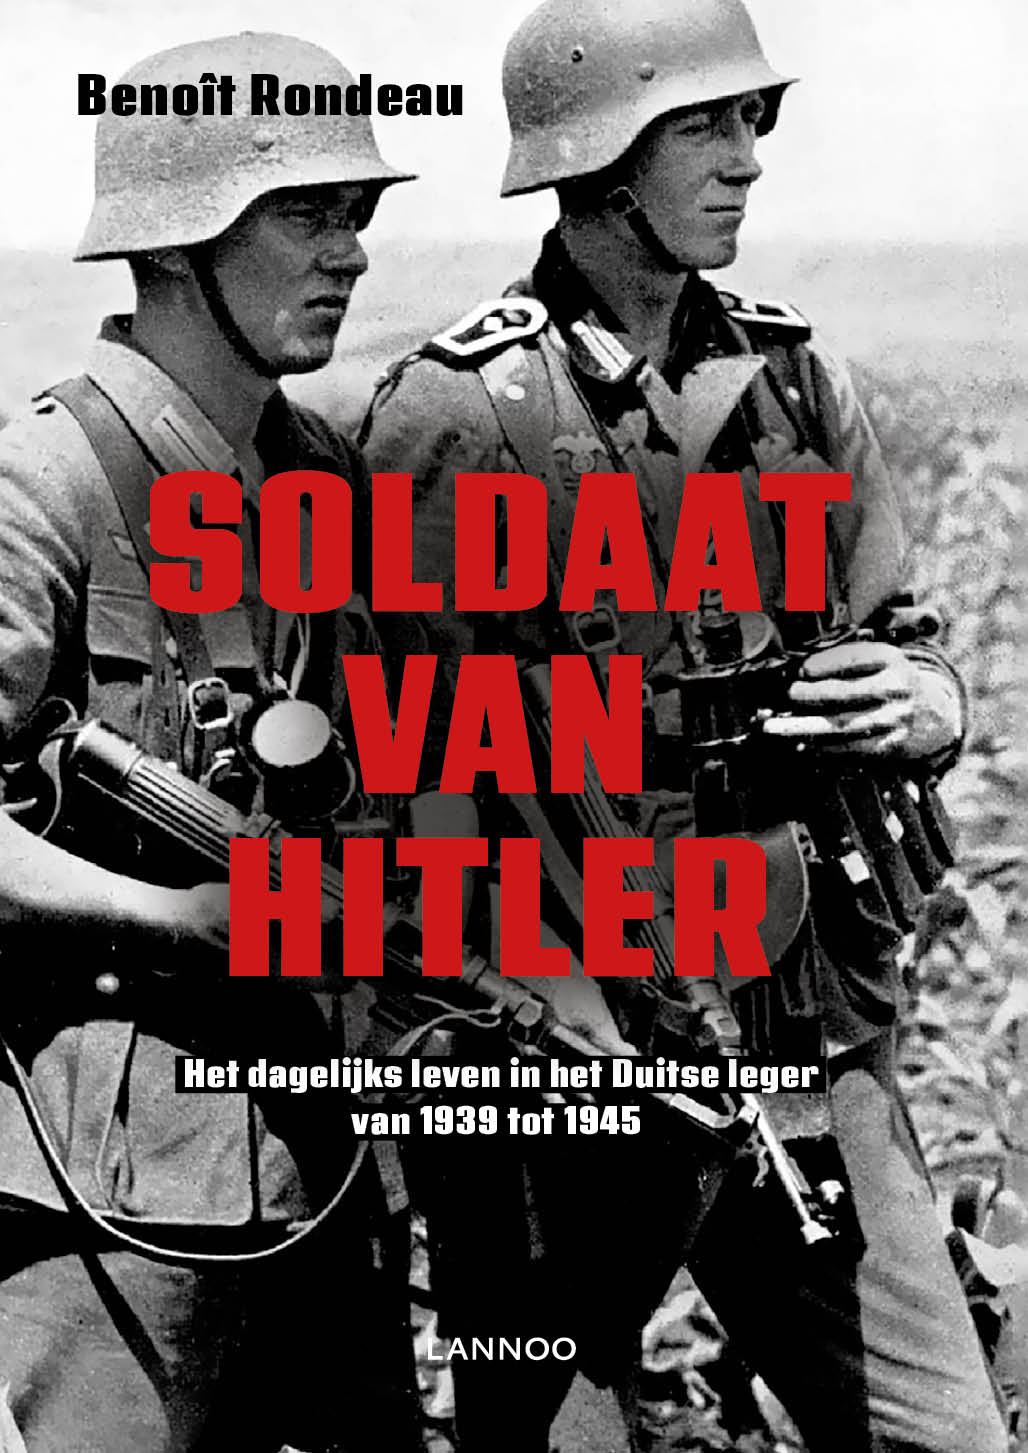 Soldaat van Hitler (Ebook)